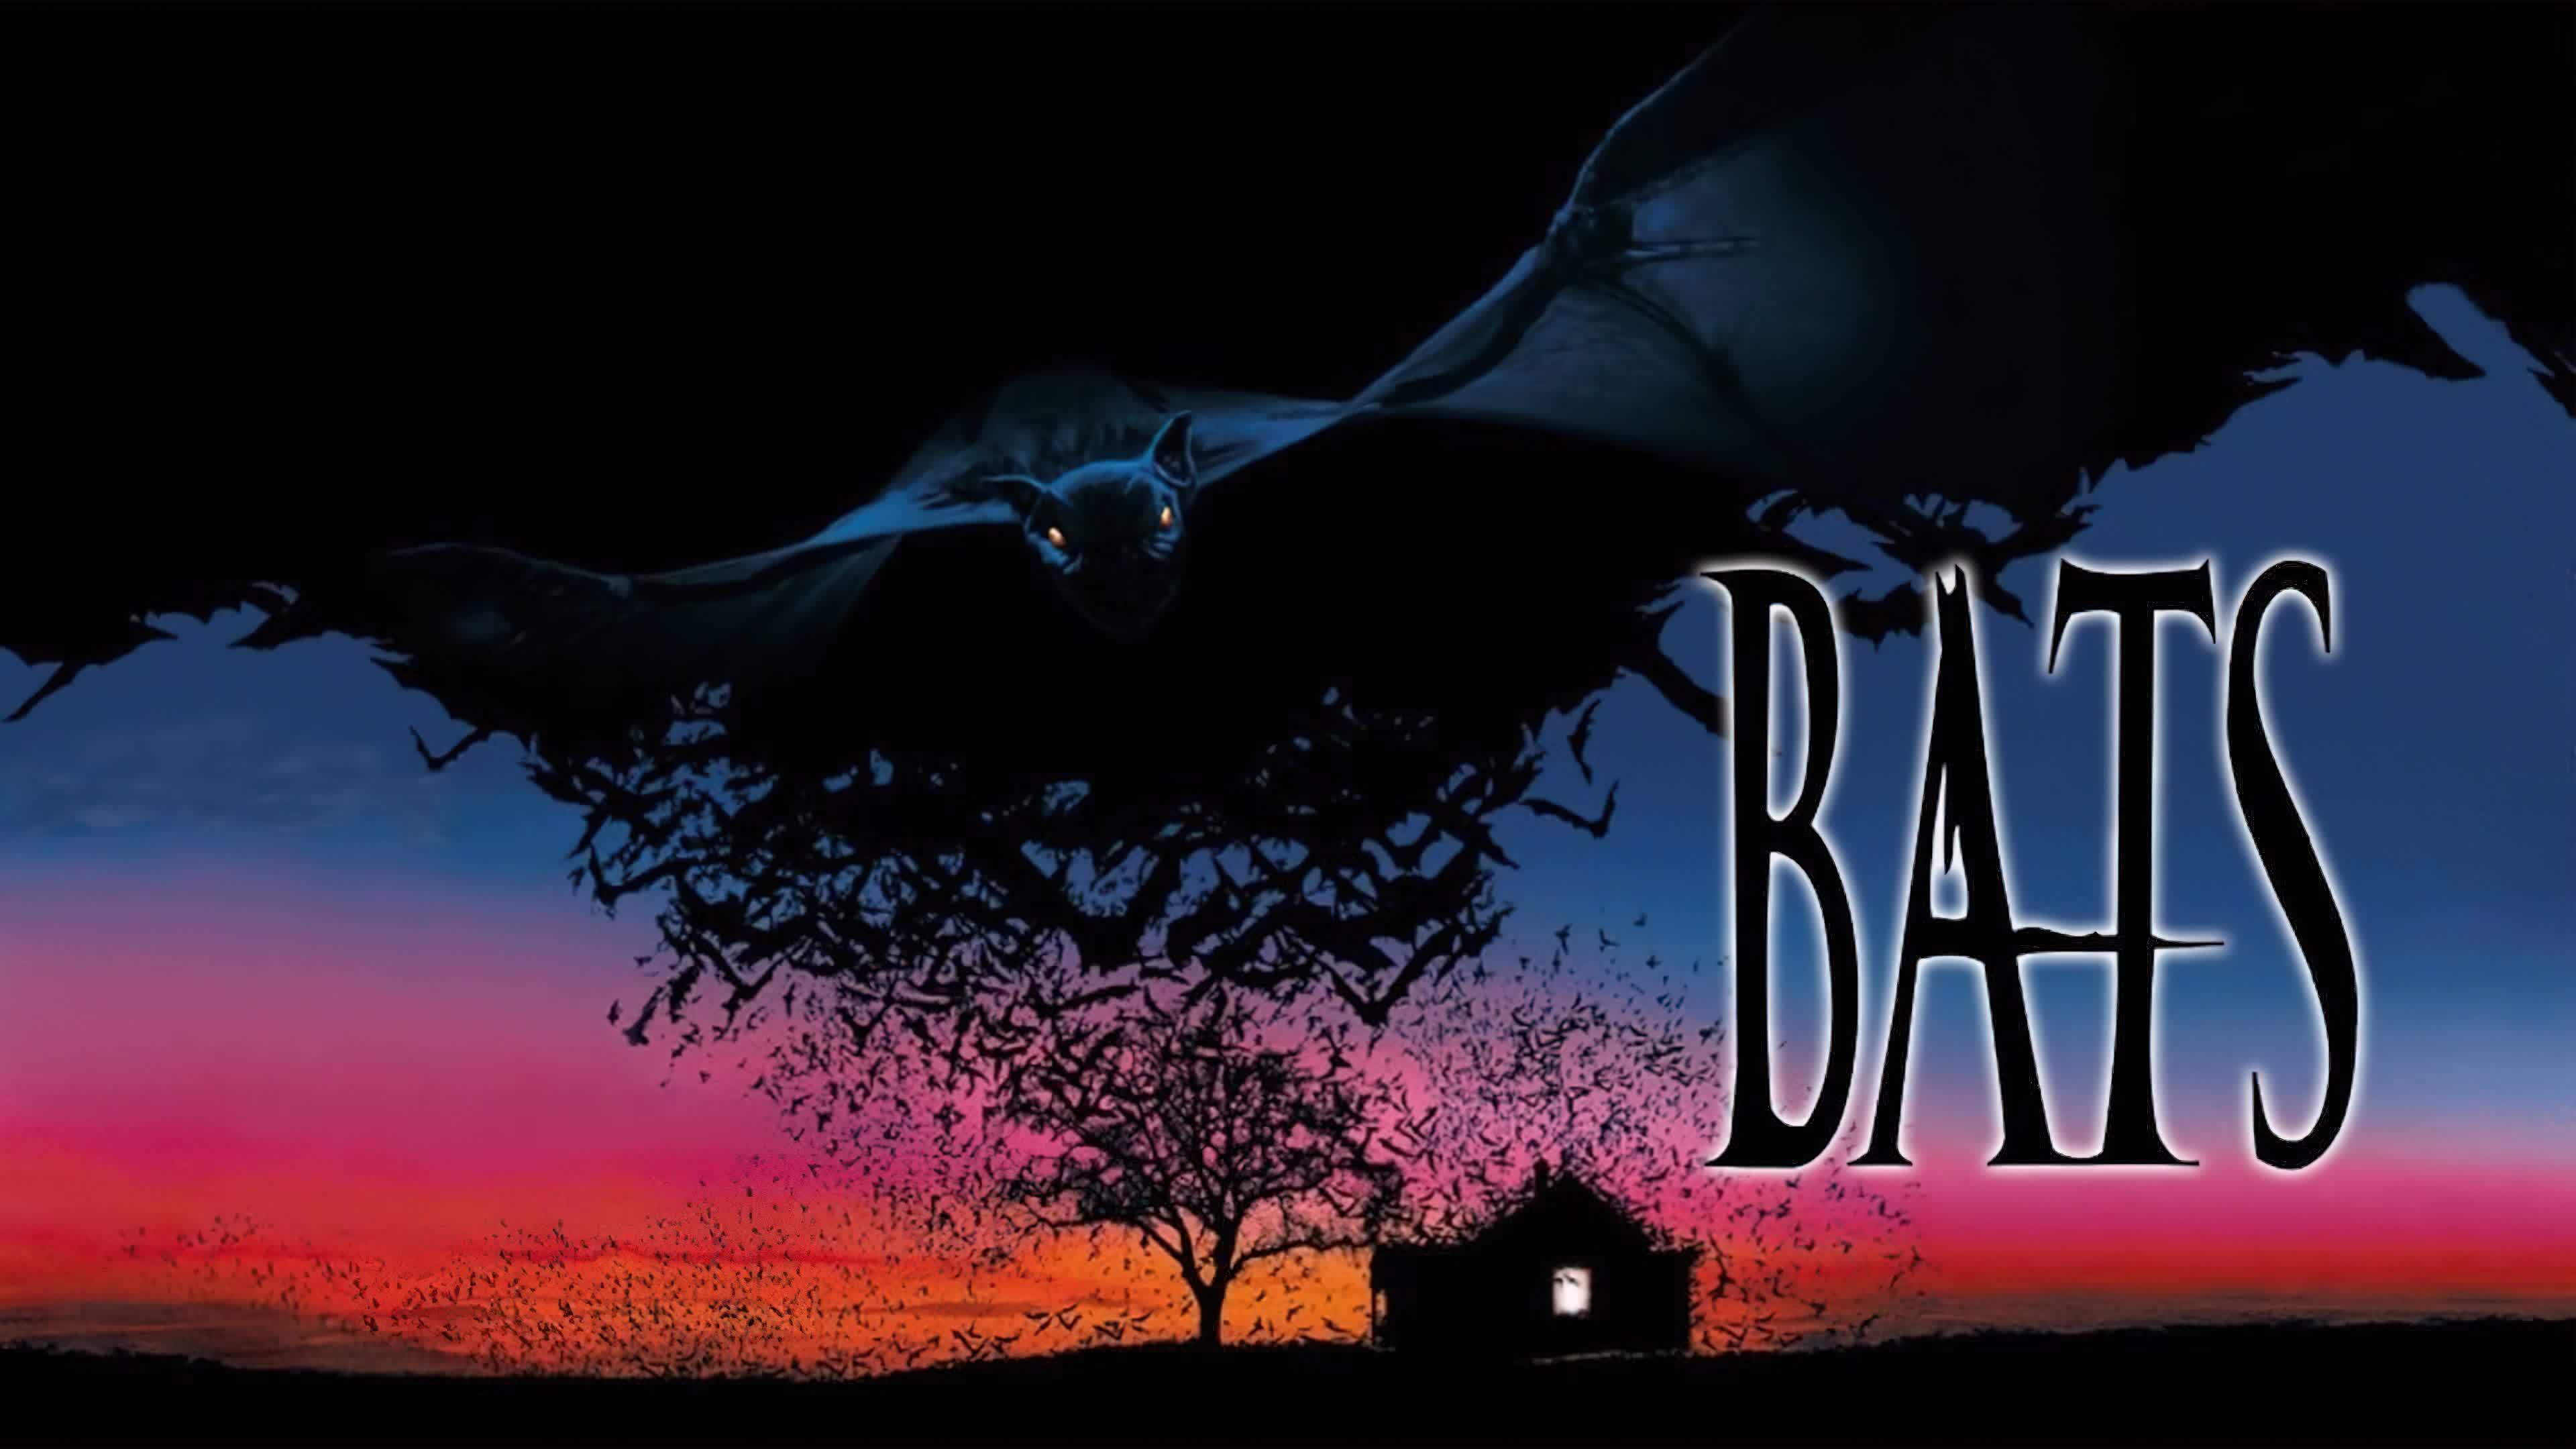 Bats (1999) เวตาลสยองอสูรพันธ์ขย้ำเมือง 